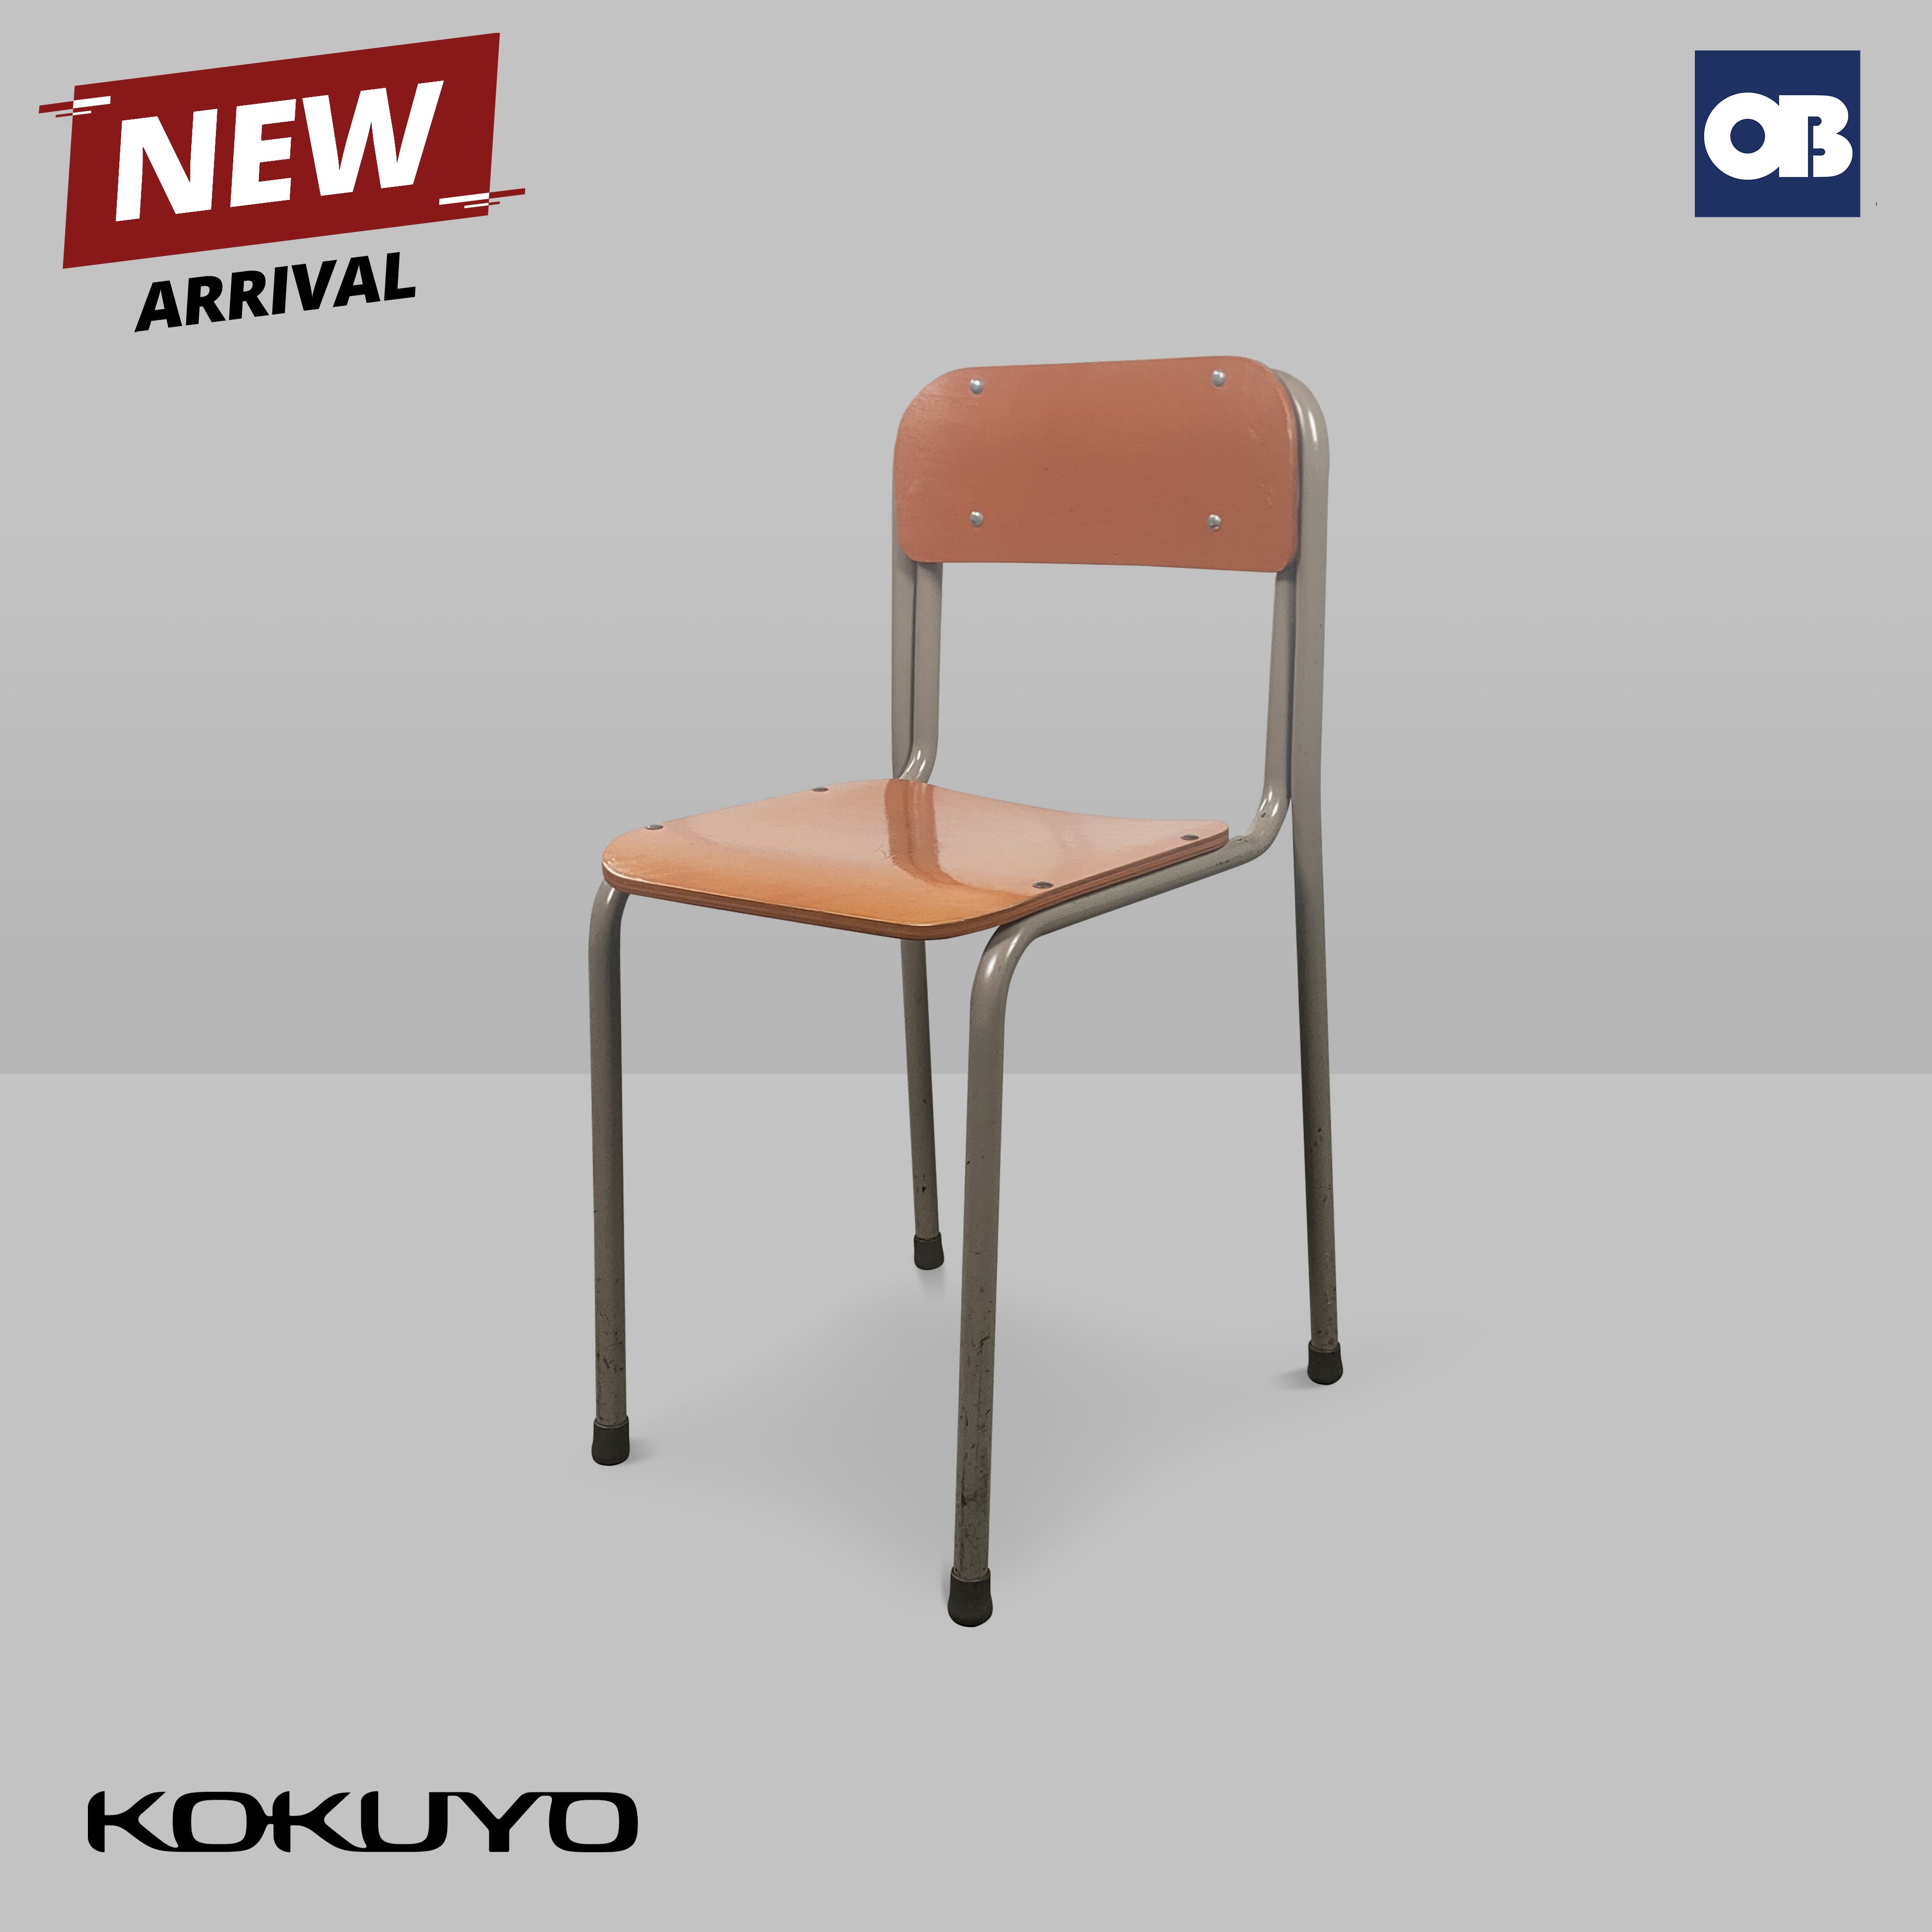 Kokuyo Study Table & Chair